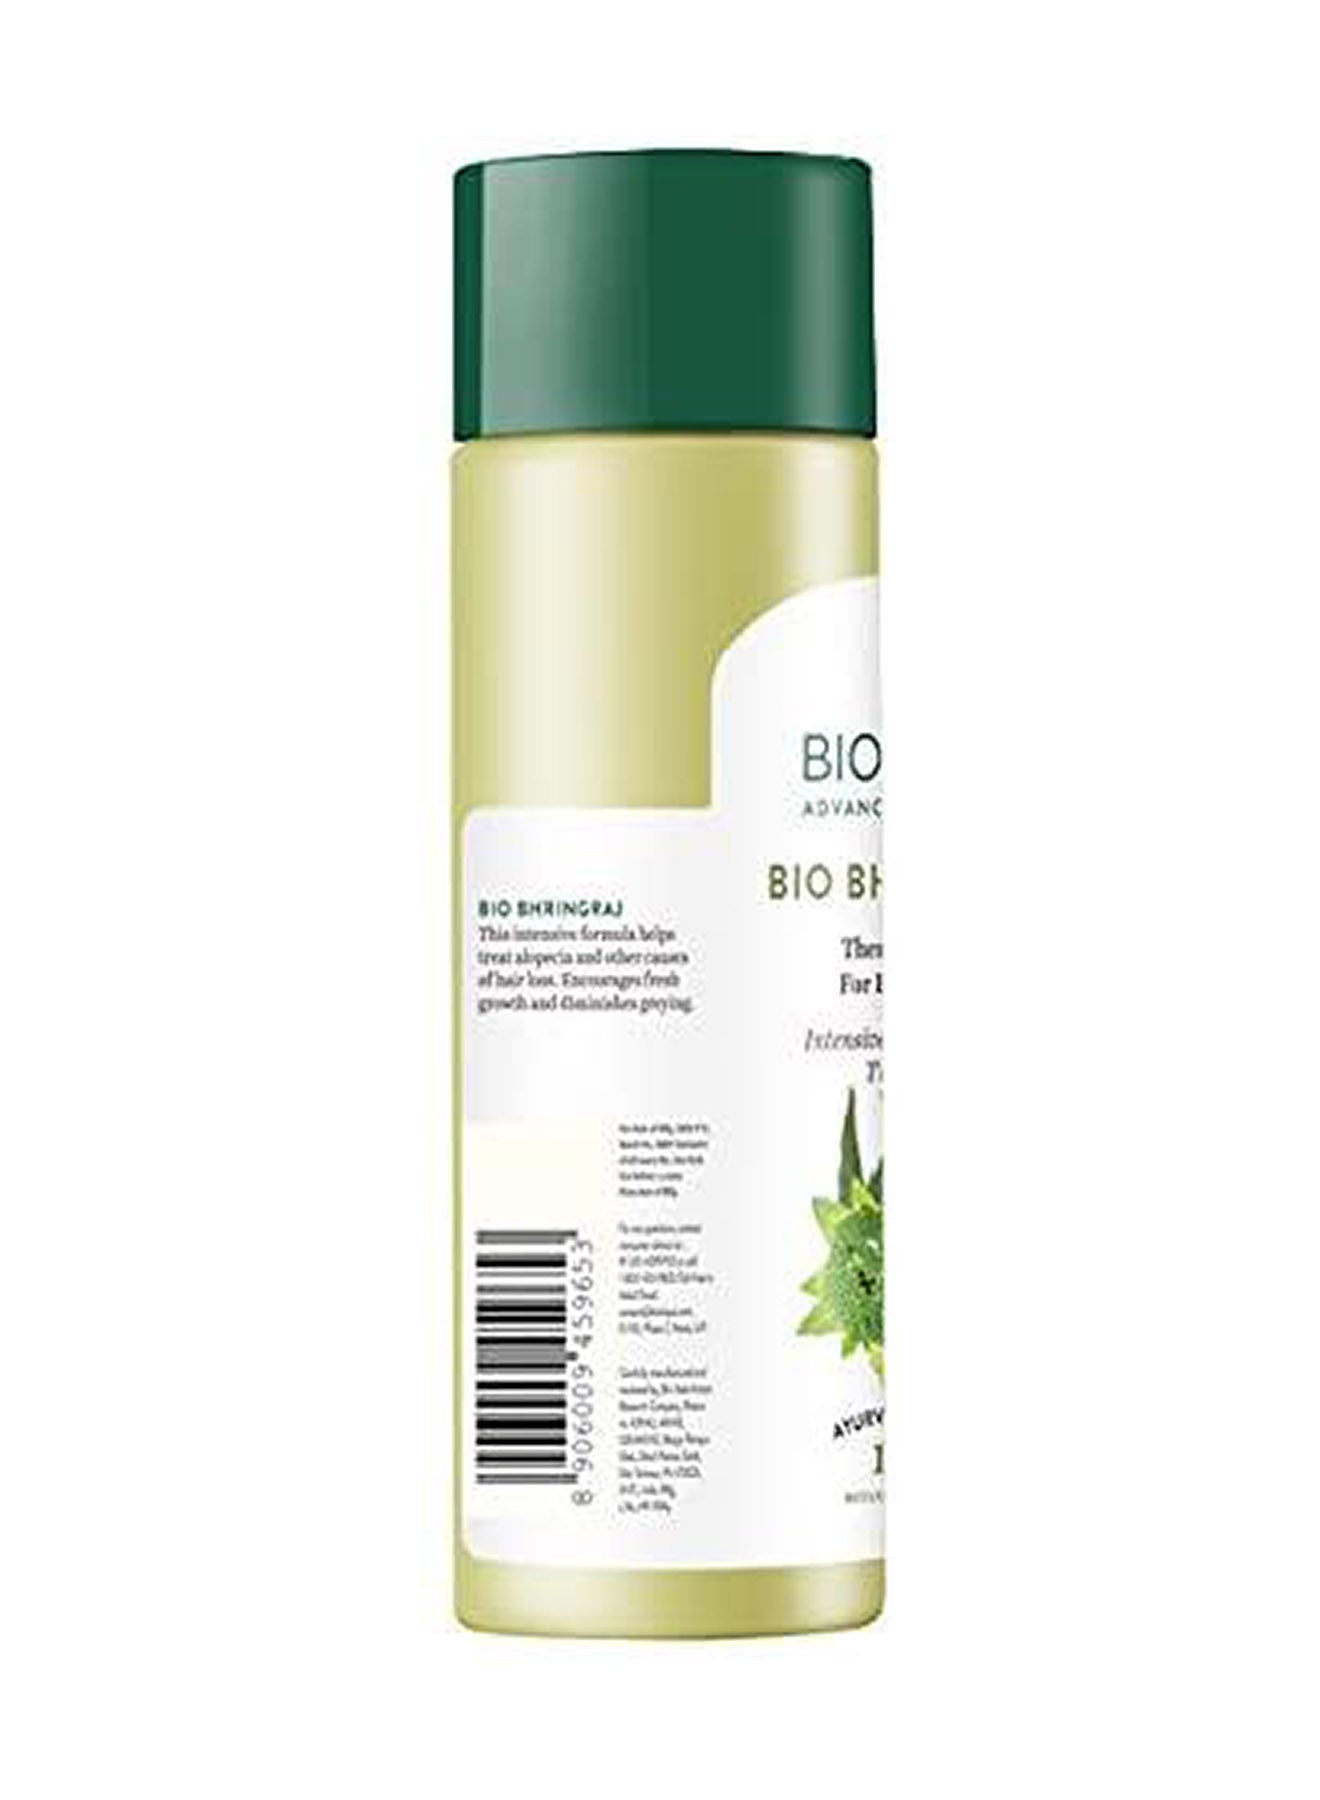 Biotique Botanicals Bhringraj Hair Oil 120ml Value Pack of 12 